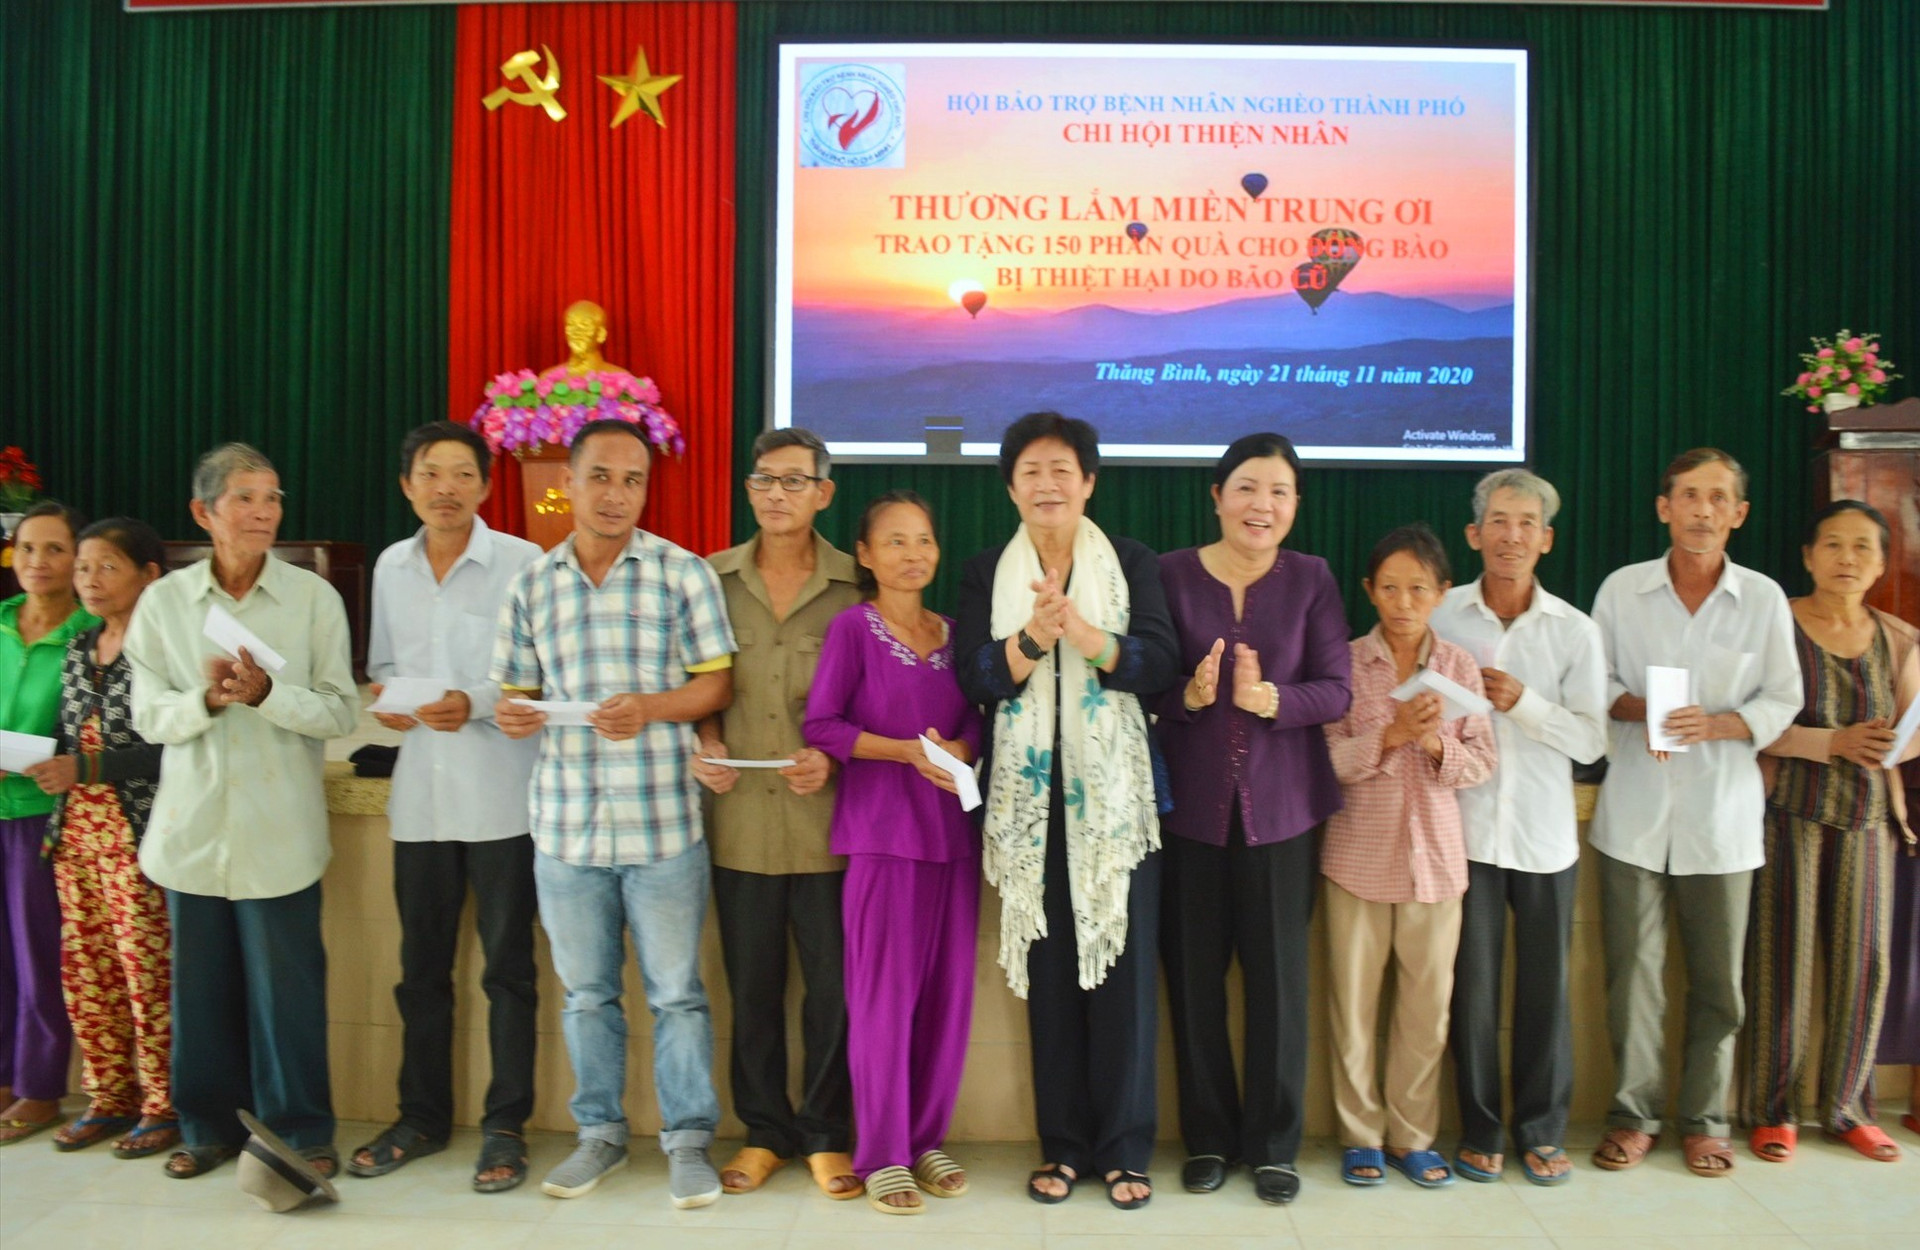 Đoàn từ thiện đã tiến hành trao 230 suất quà và tiền mặt cho người dân Thăng Bình và Duy Xuyên trị giá gần 500 triệu đồng